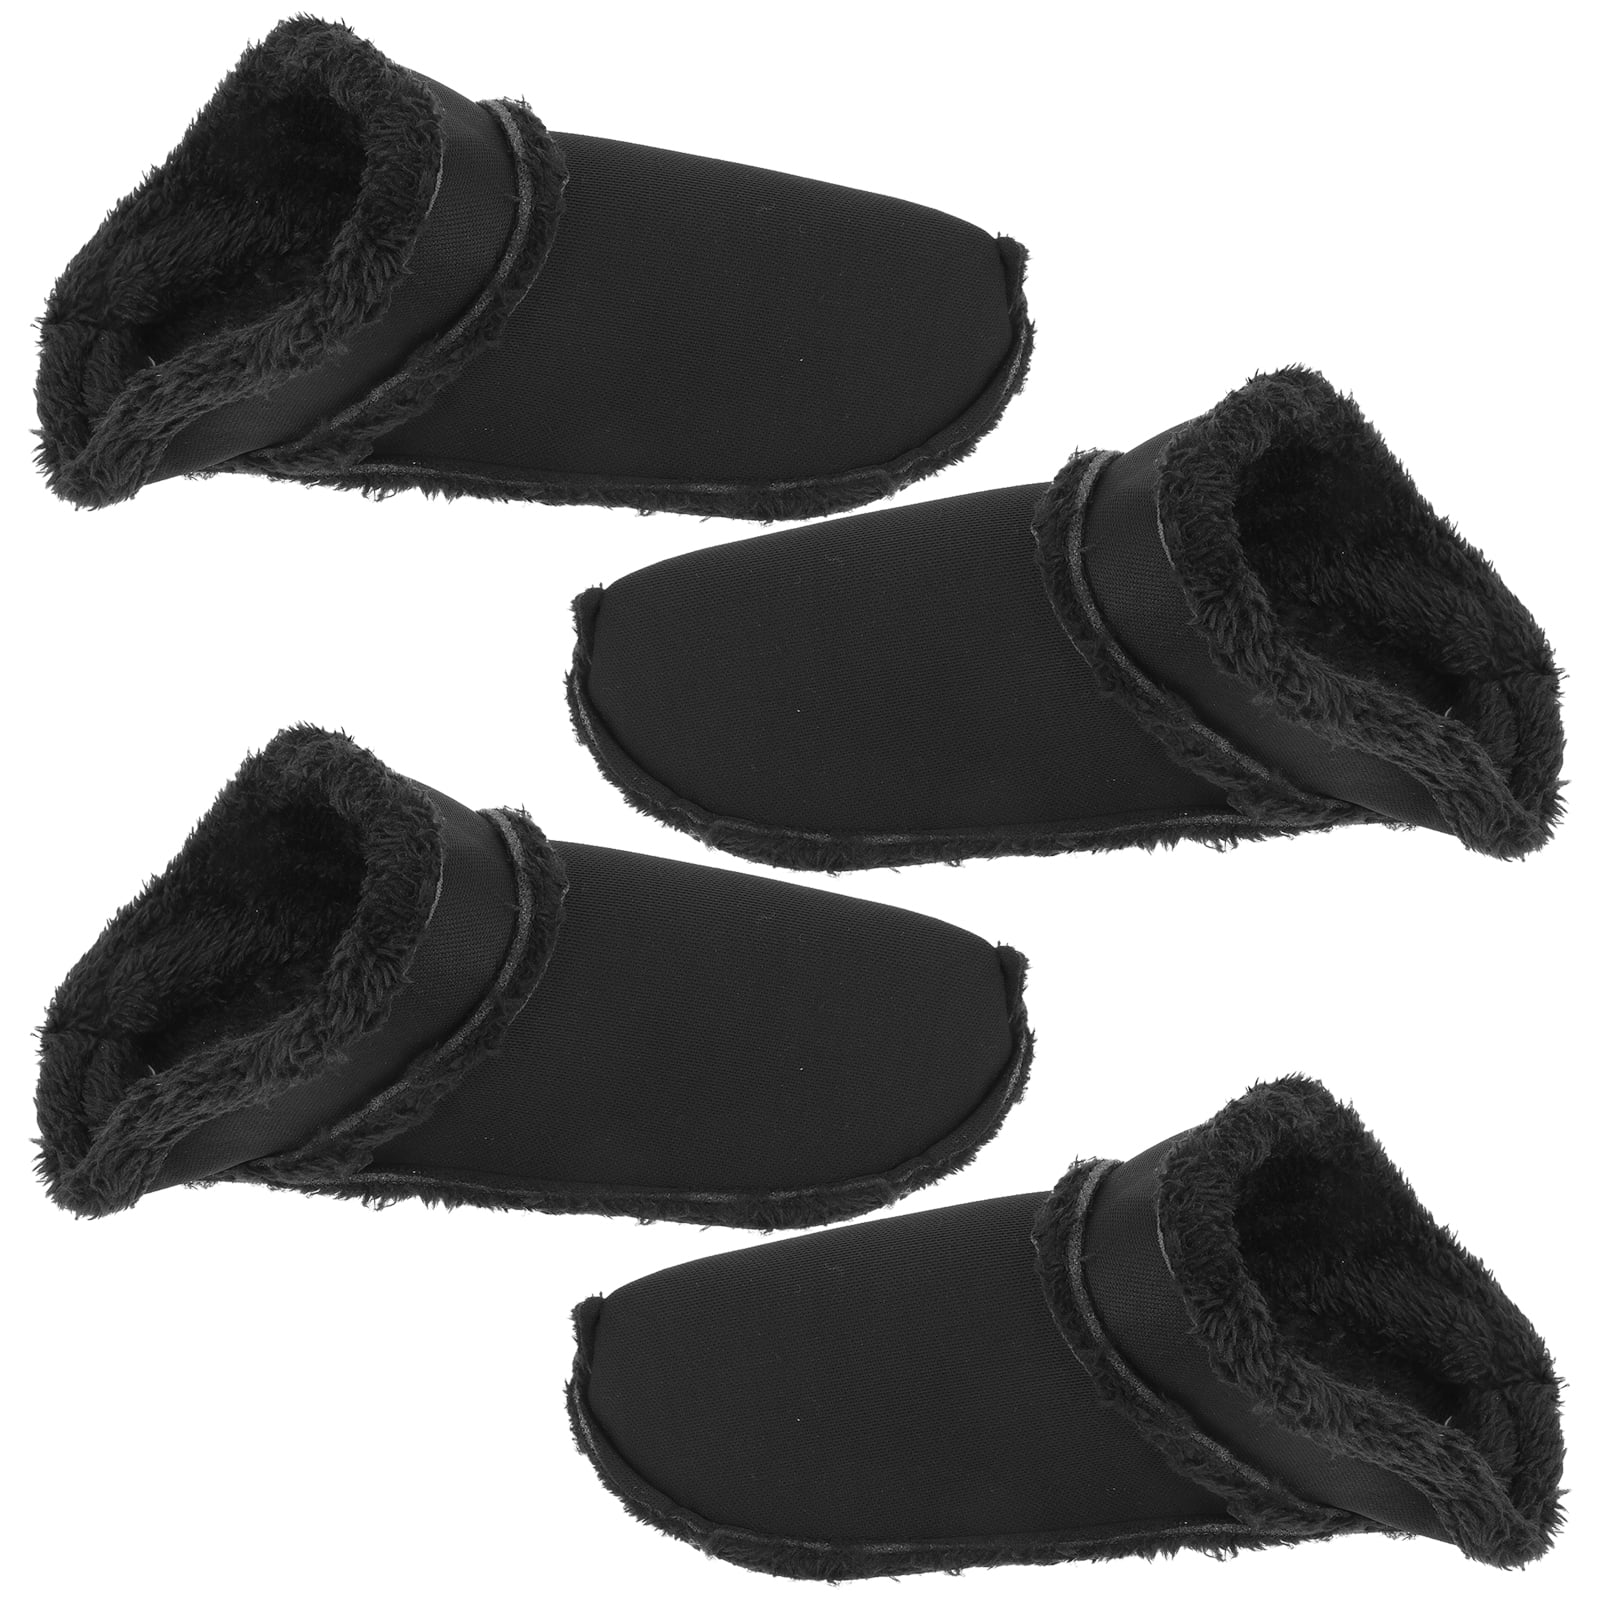 shoe rack 60cm wide 2 Pairs Winter Clogs Shoes Insoles Winter Fur ...